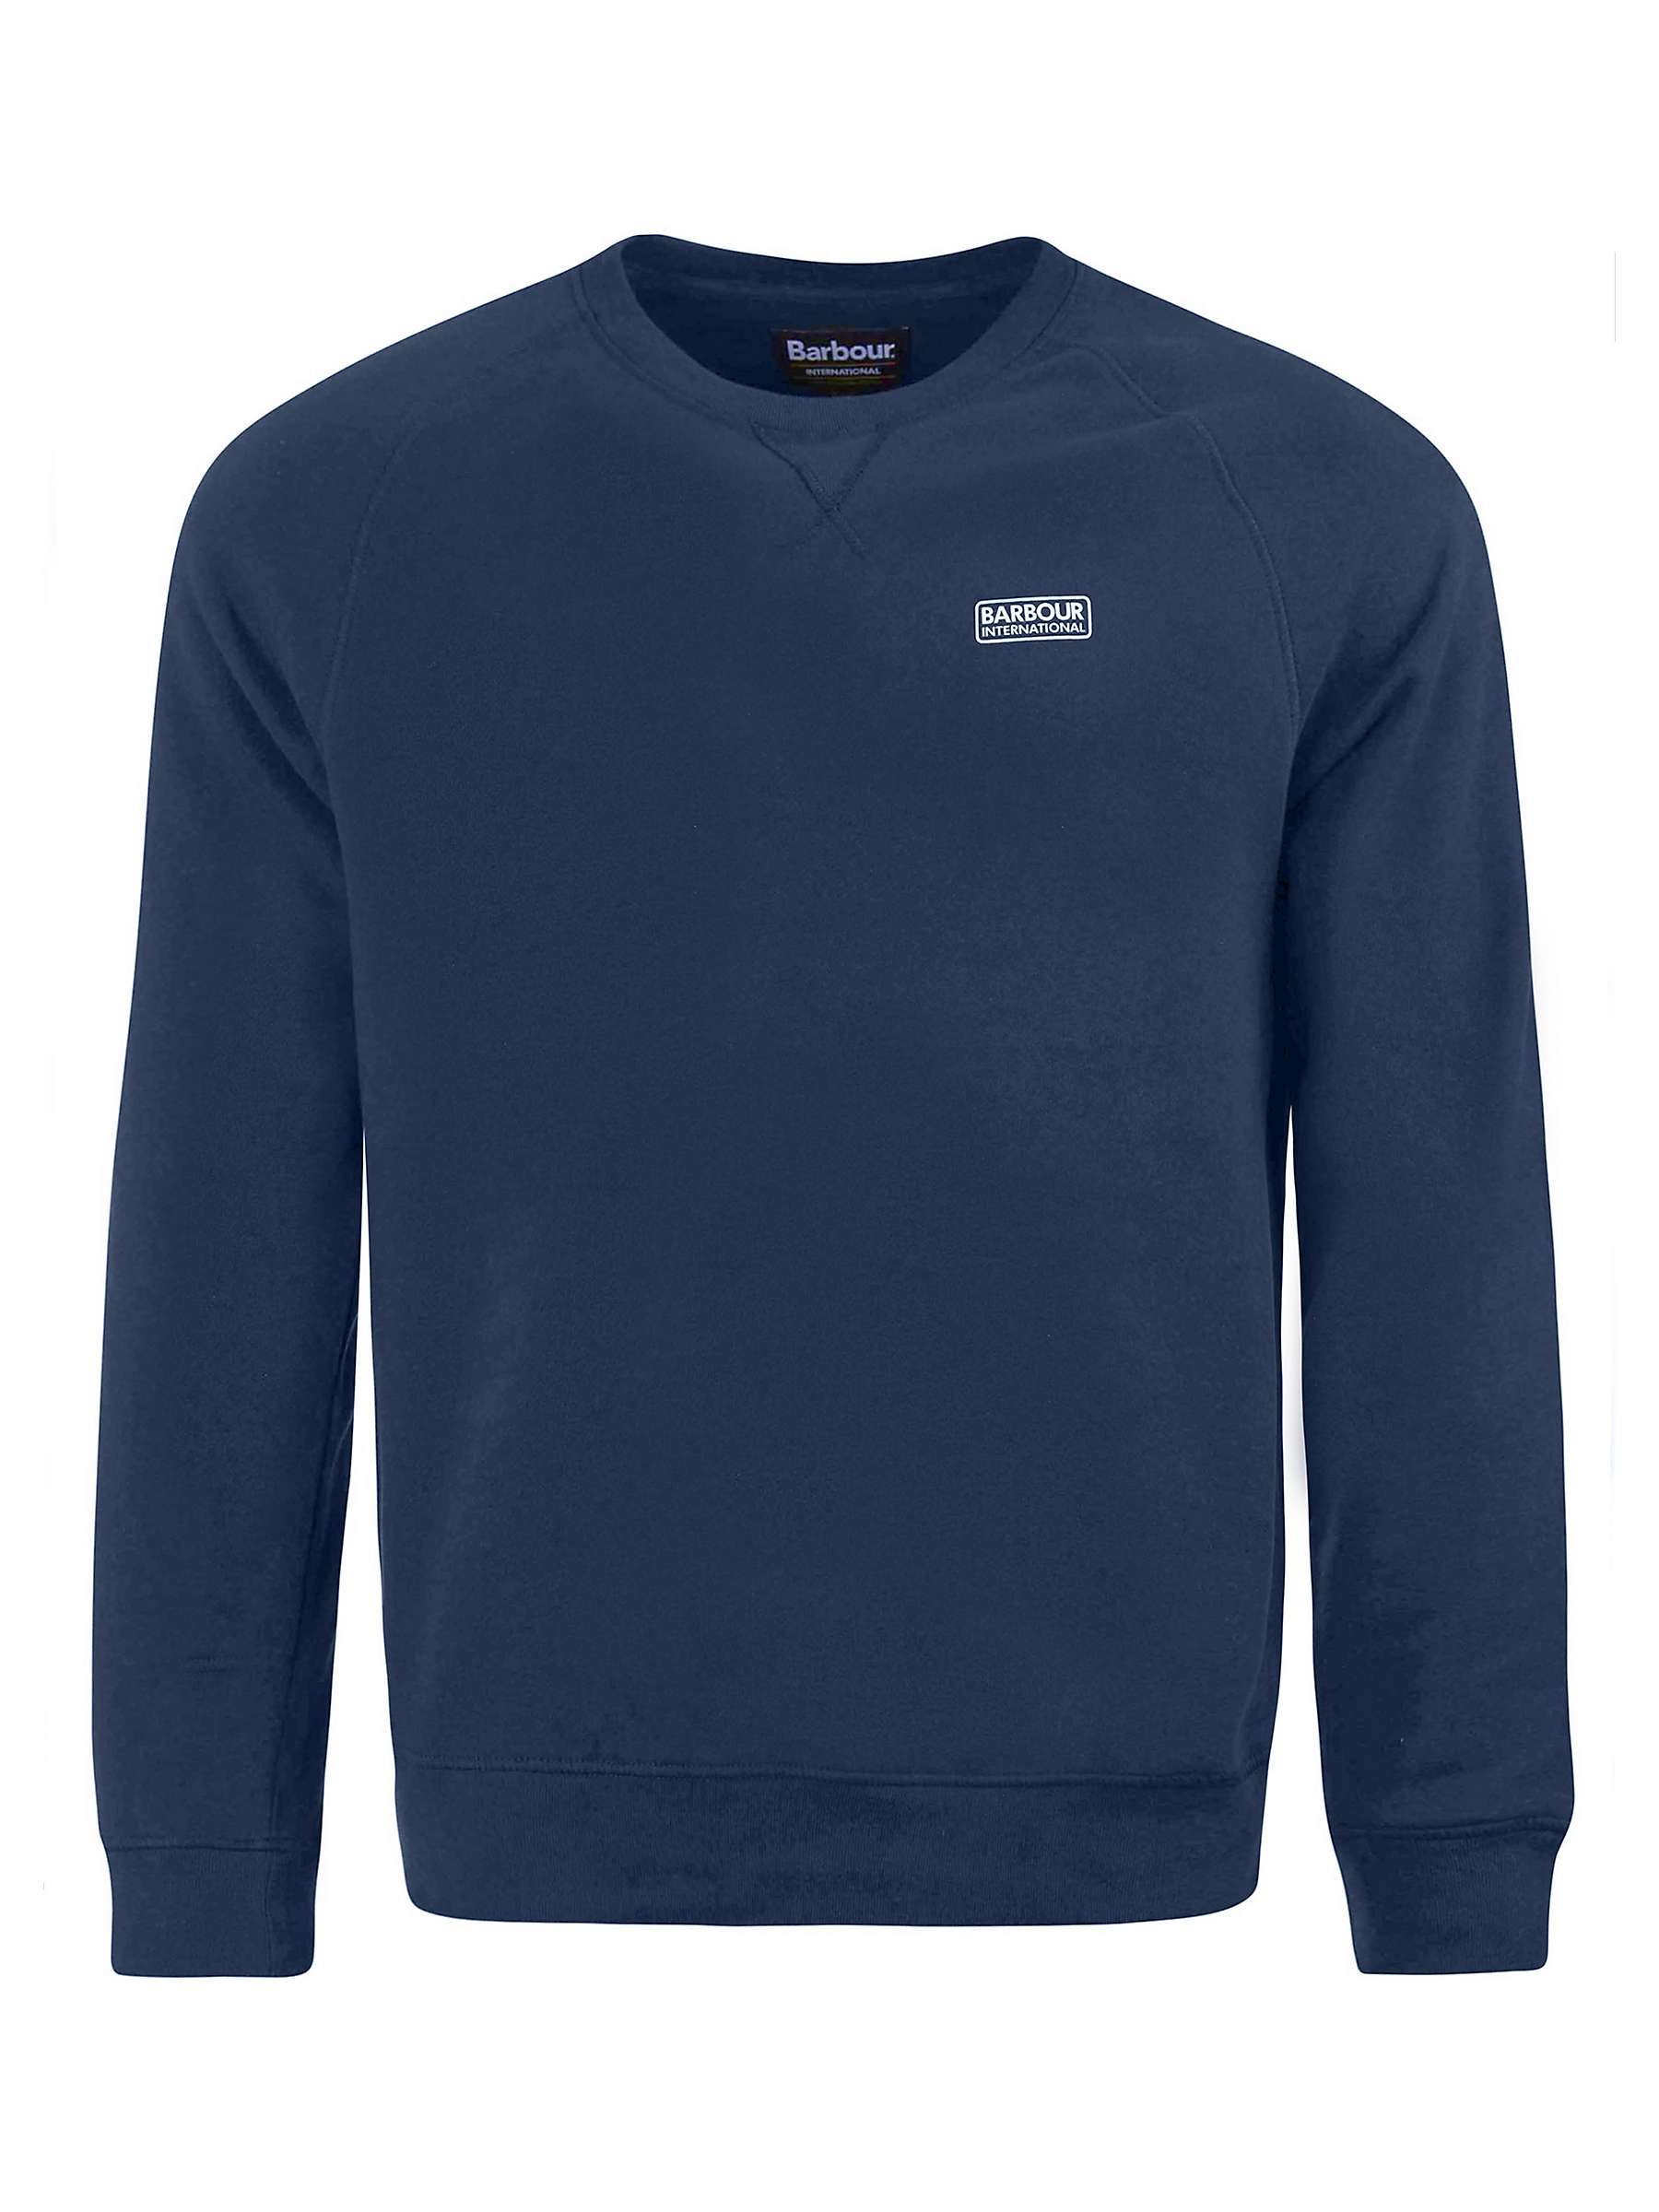 Buy Barbour International Crew Neck Sweatshirt Online at johnlewis.com